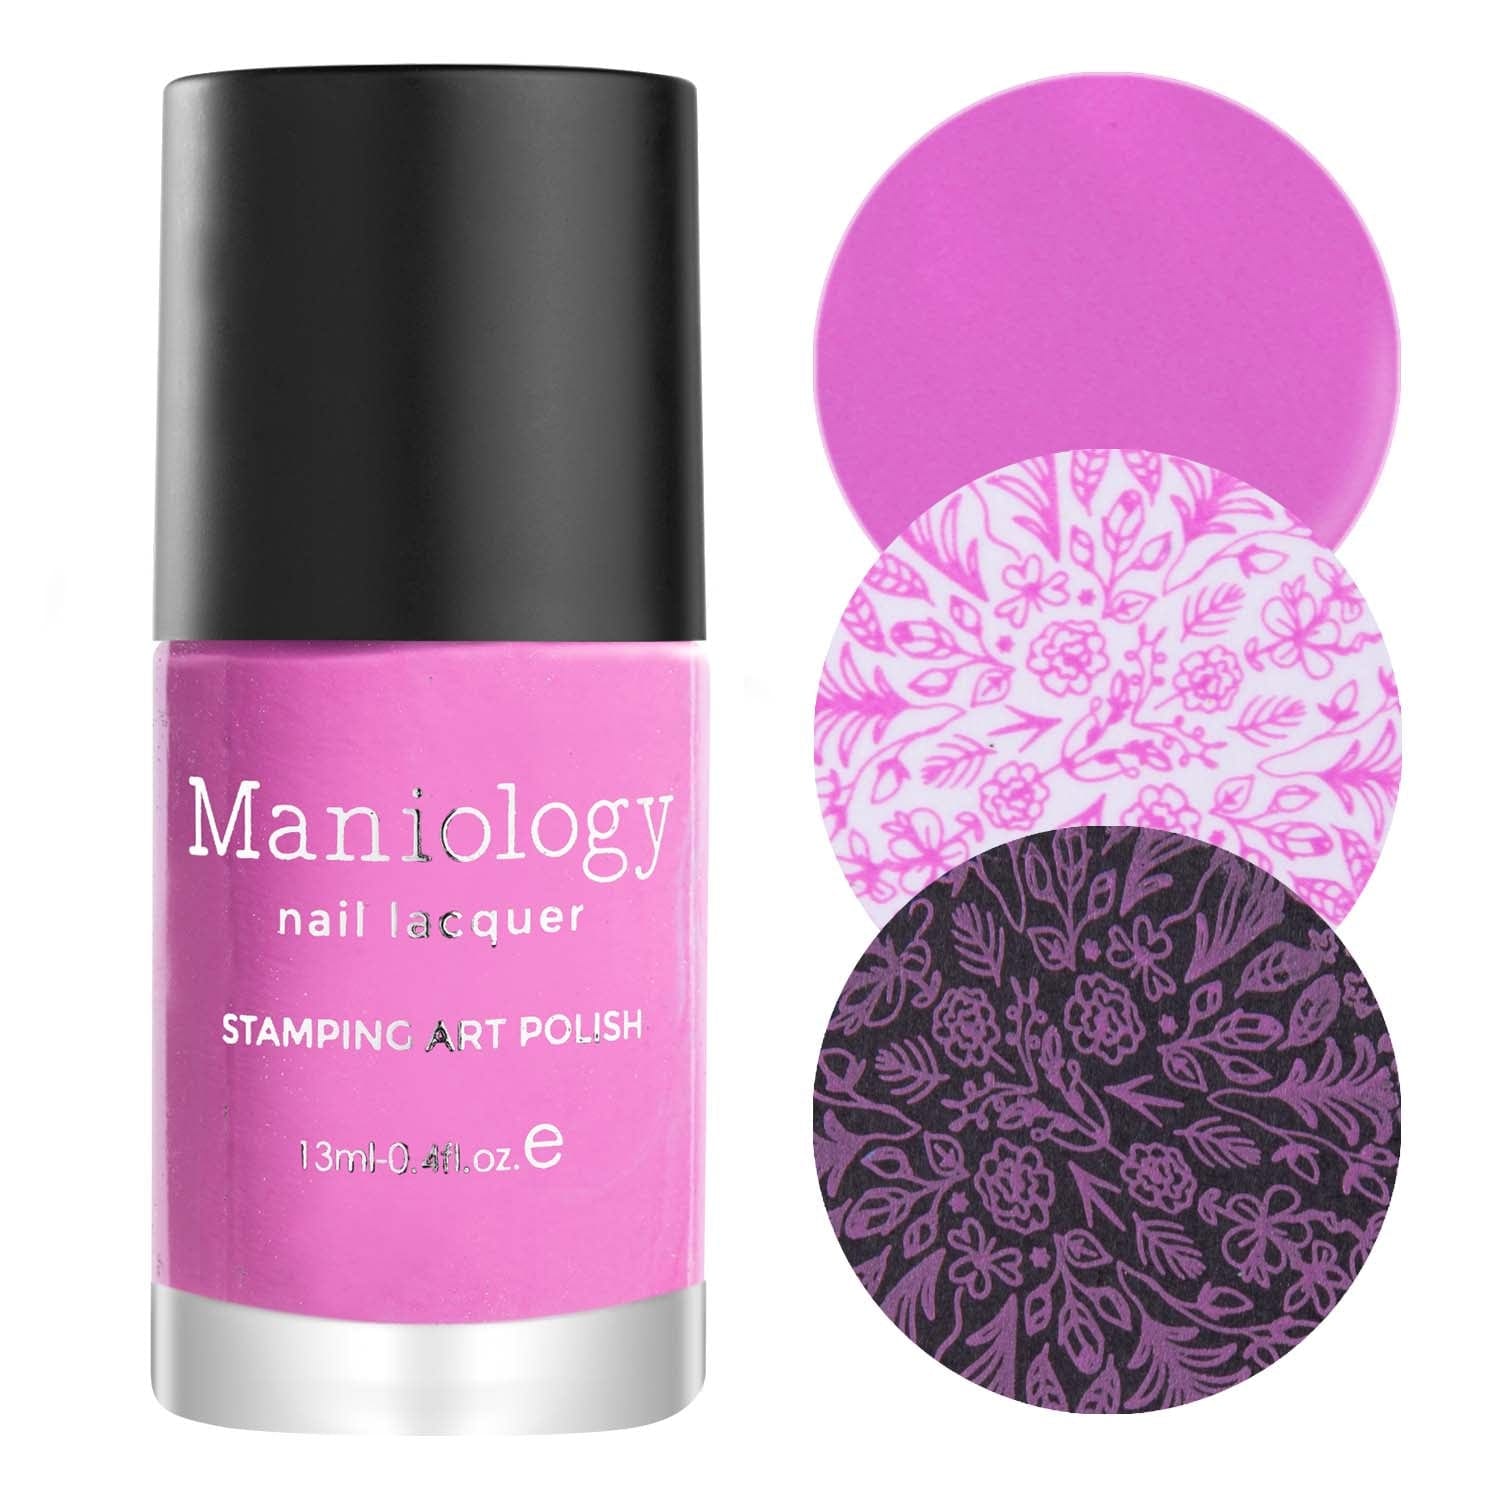 Stamping Rose Pink Polish Cream Maniology Primerose |